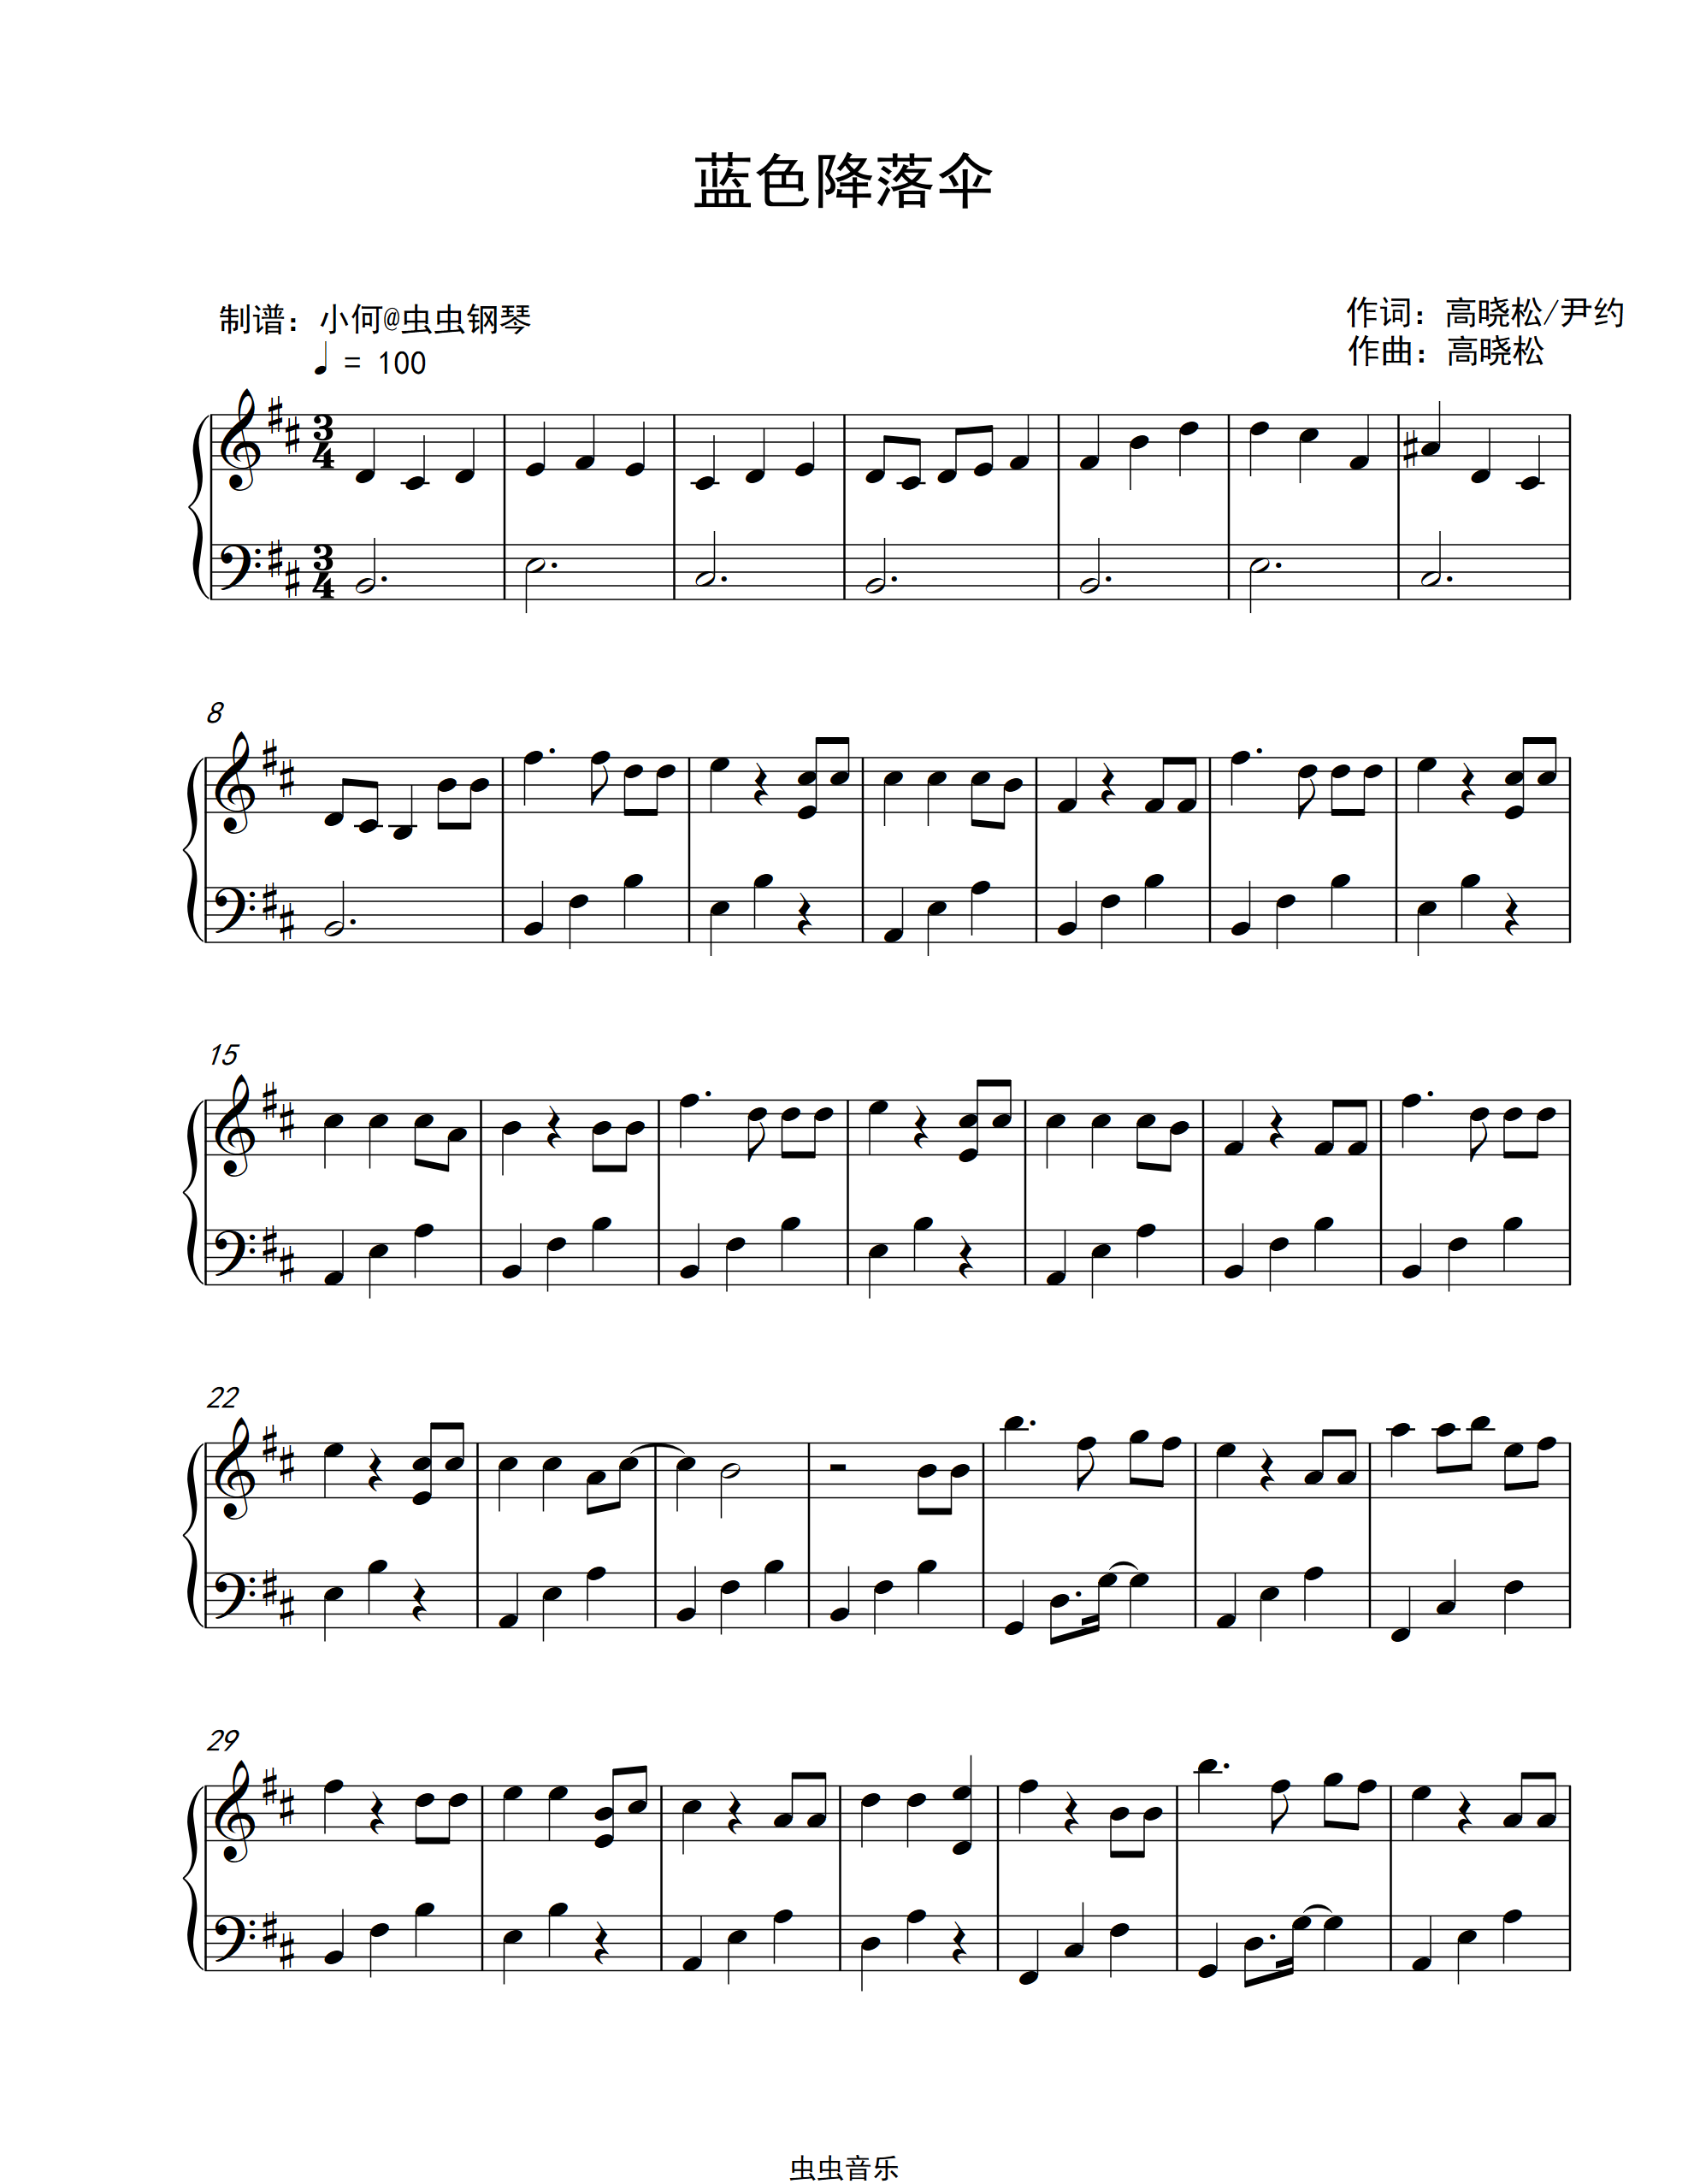 简化版《蓝色降落伞》钢琴谱 - 初学者最易上手 - 周深带指法钢琴谱子 - 钢琴简谱